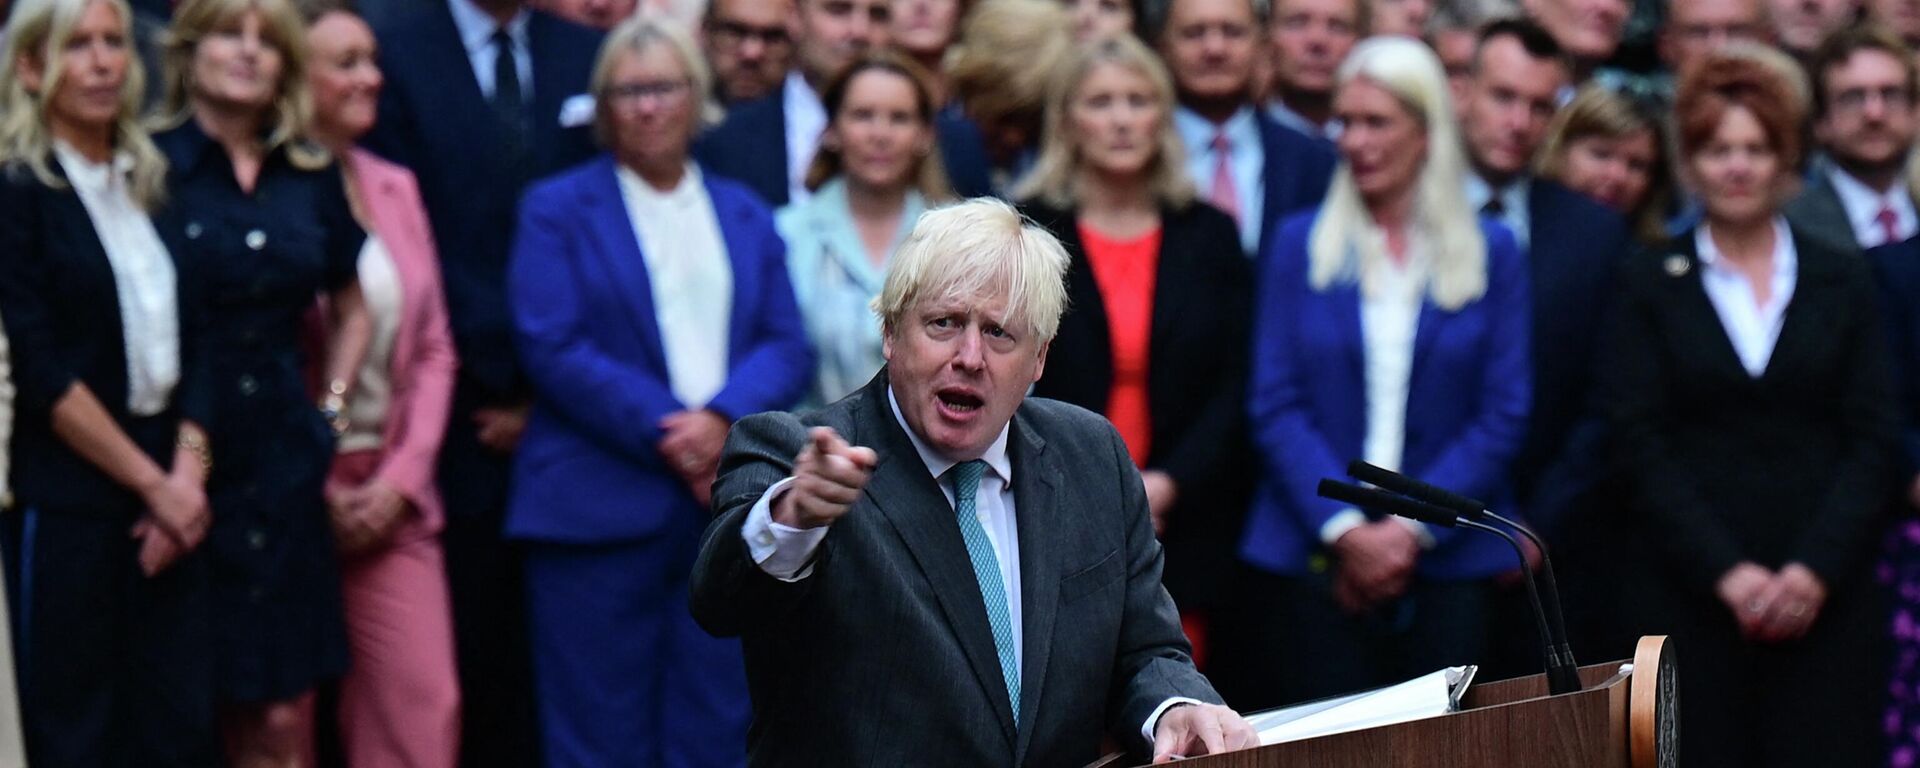 Britanya Başbakanı Boris Johnson, Kraliçe 2. Elizabeth'e resmen istifasını sunmak için son kez çıktığı  Downing Sokağı 10 Numara'nın ikonik kapısı önünde veda konuşması yaptı.  - Sputnik Türkiye, 1920, 06.09.2022